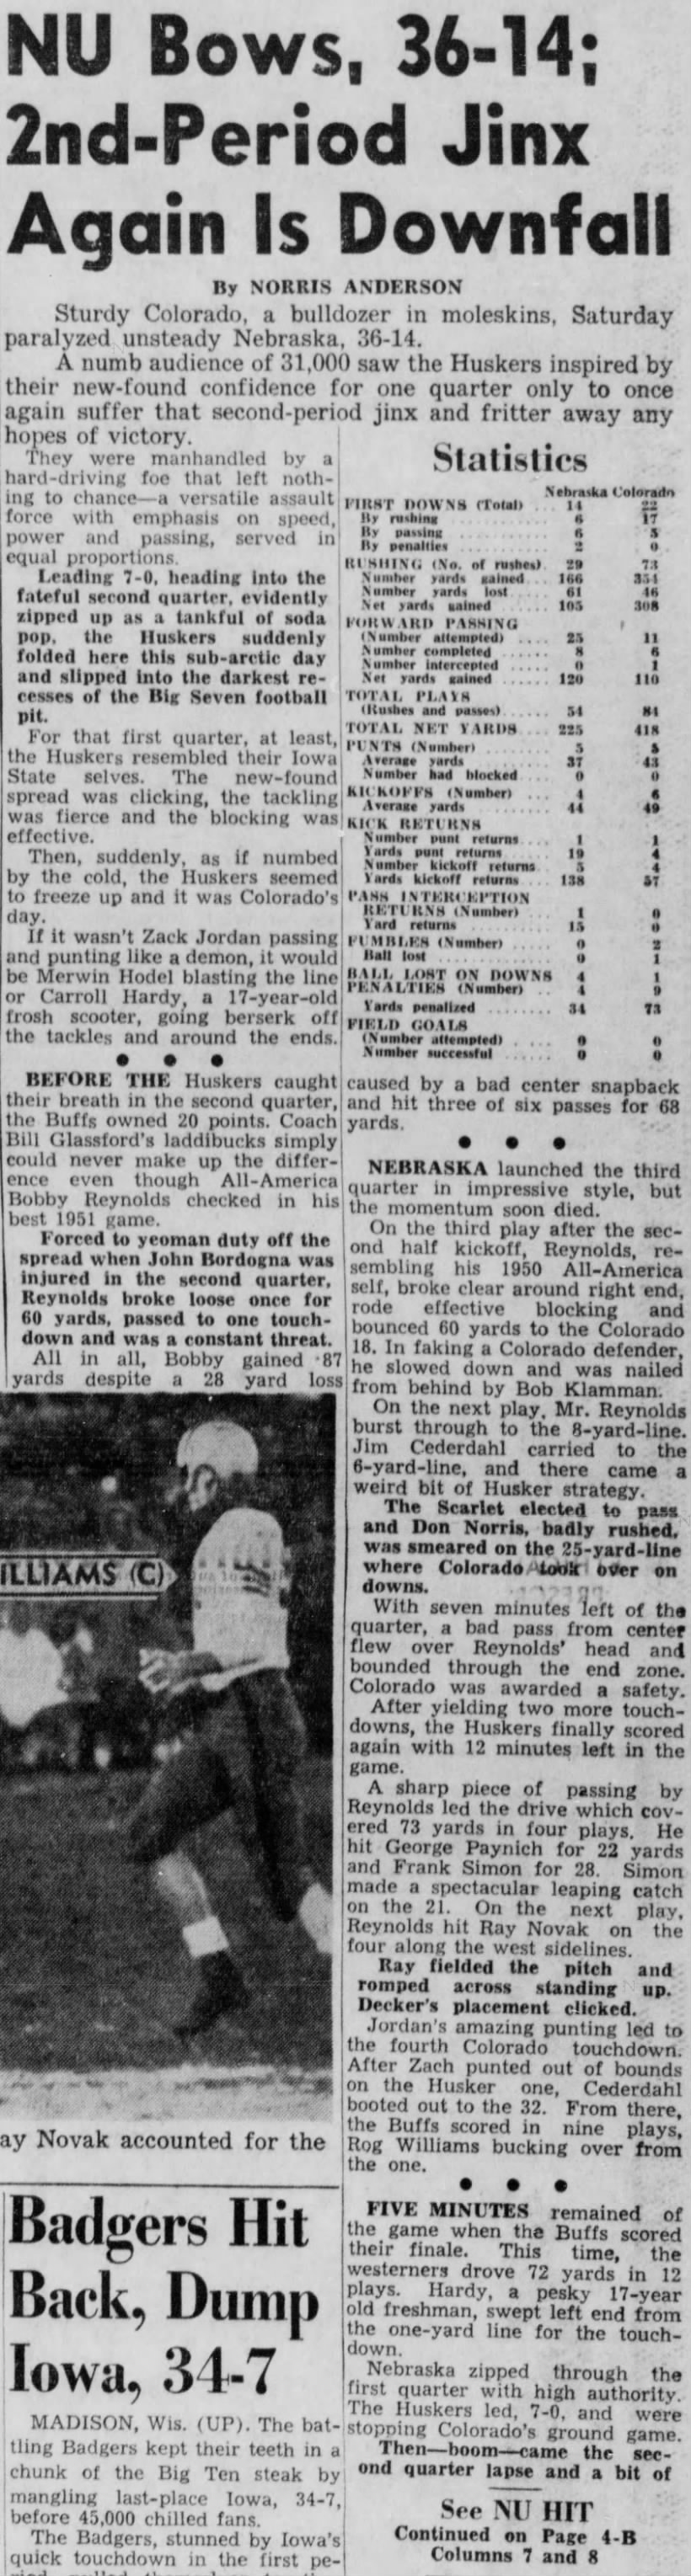 1951 Nebraska-Colorado football, part 1